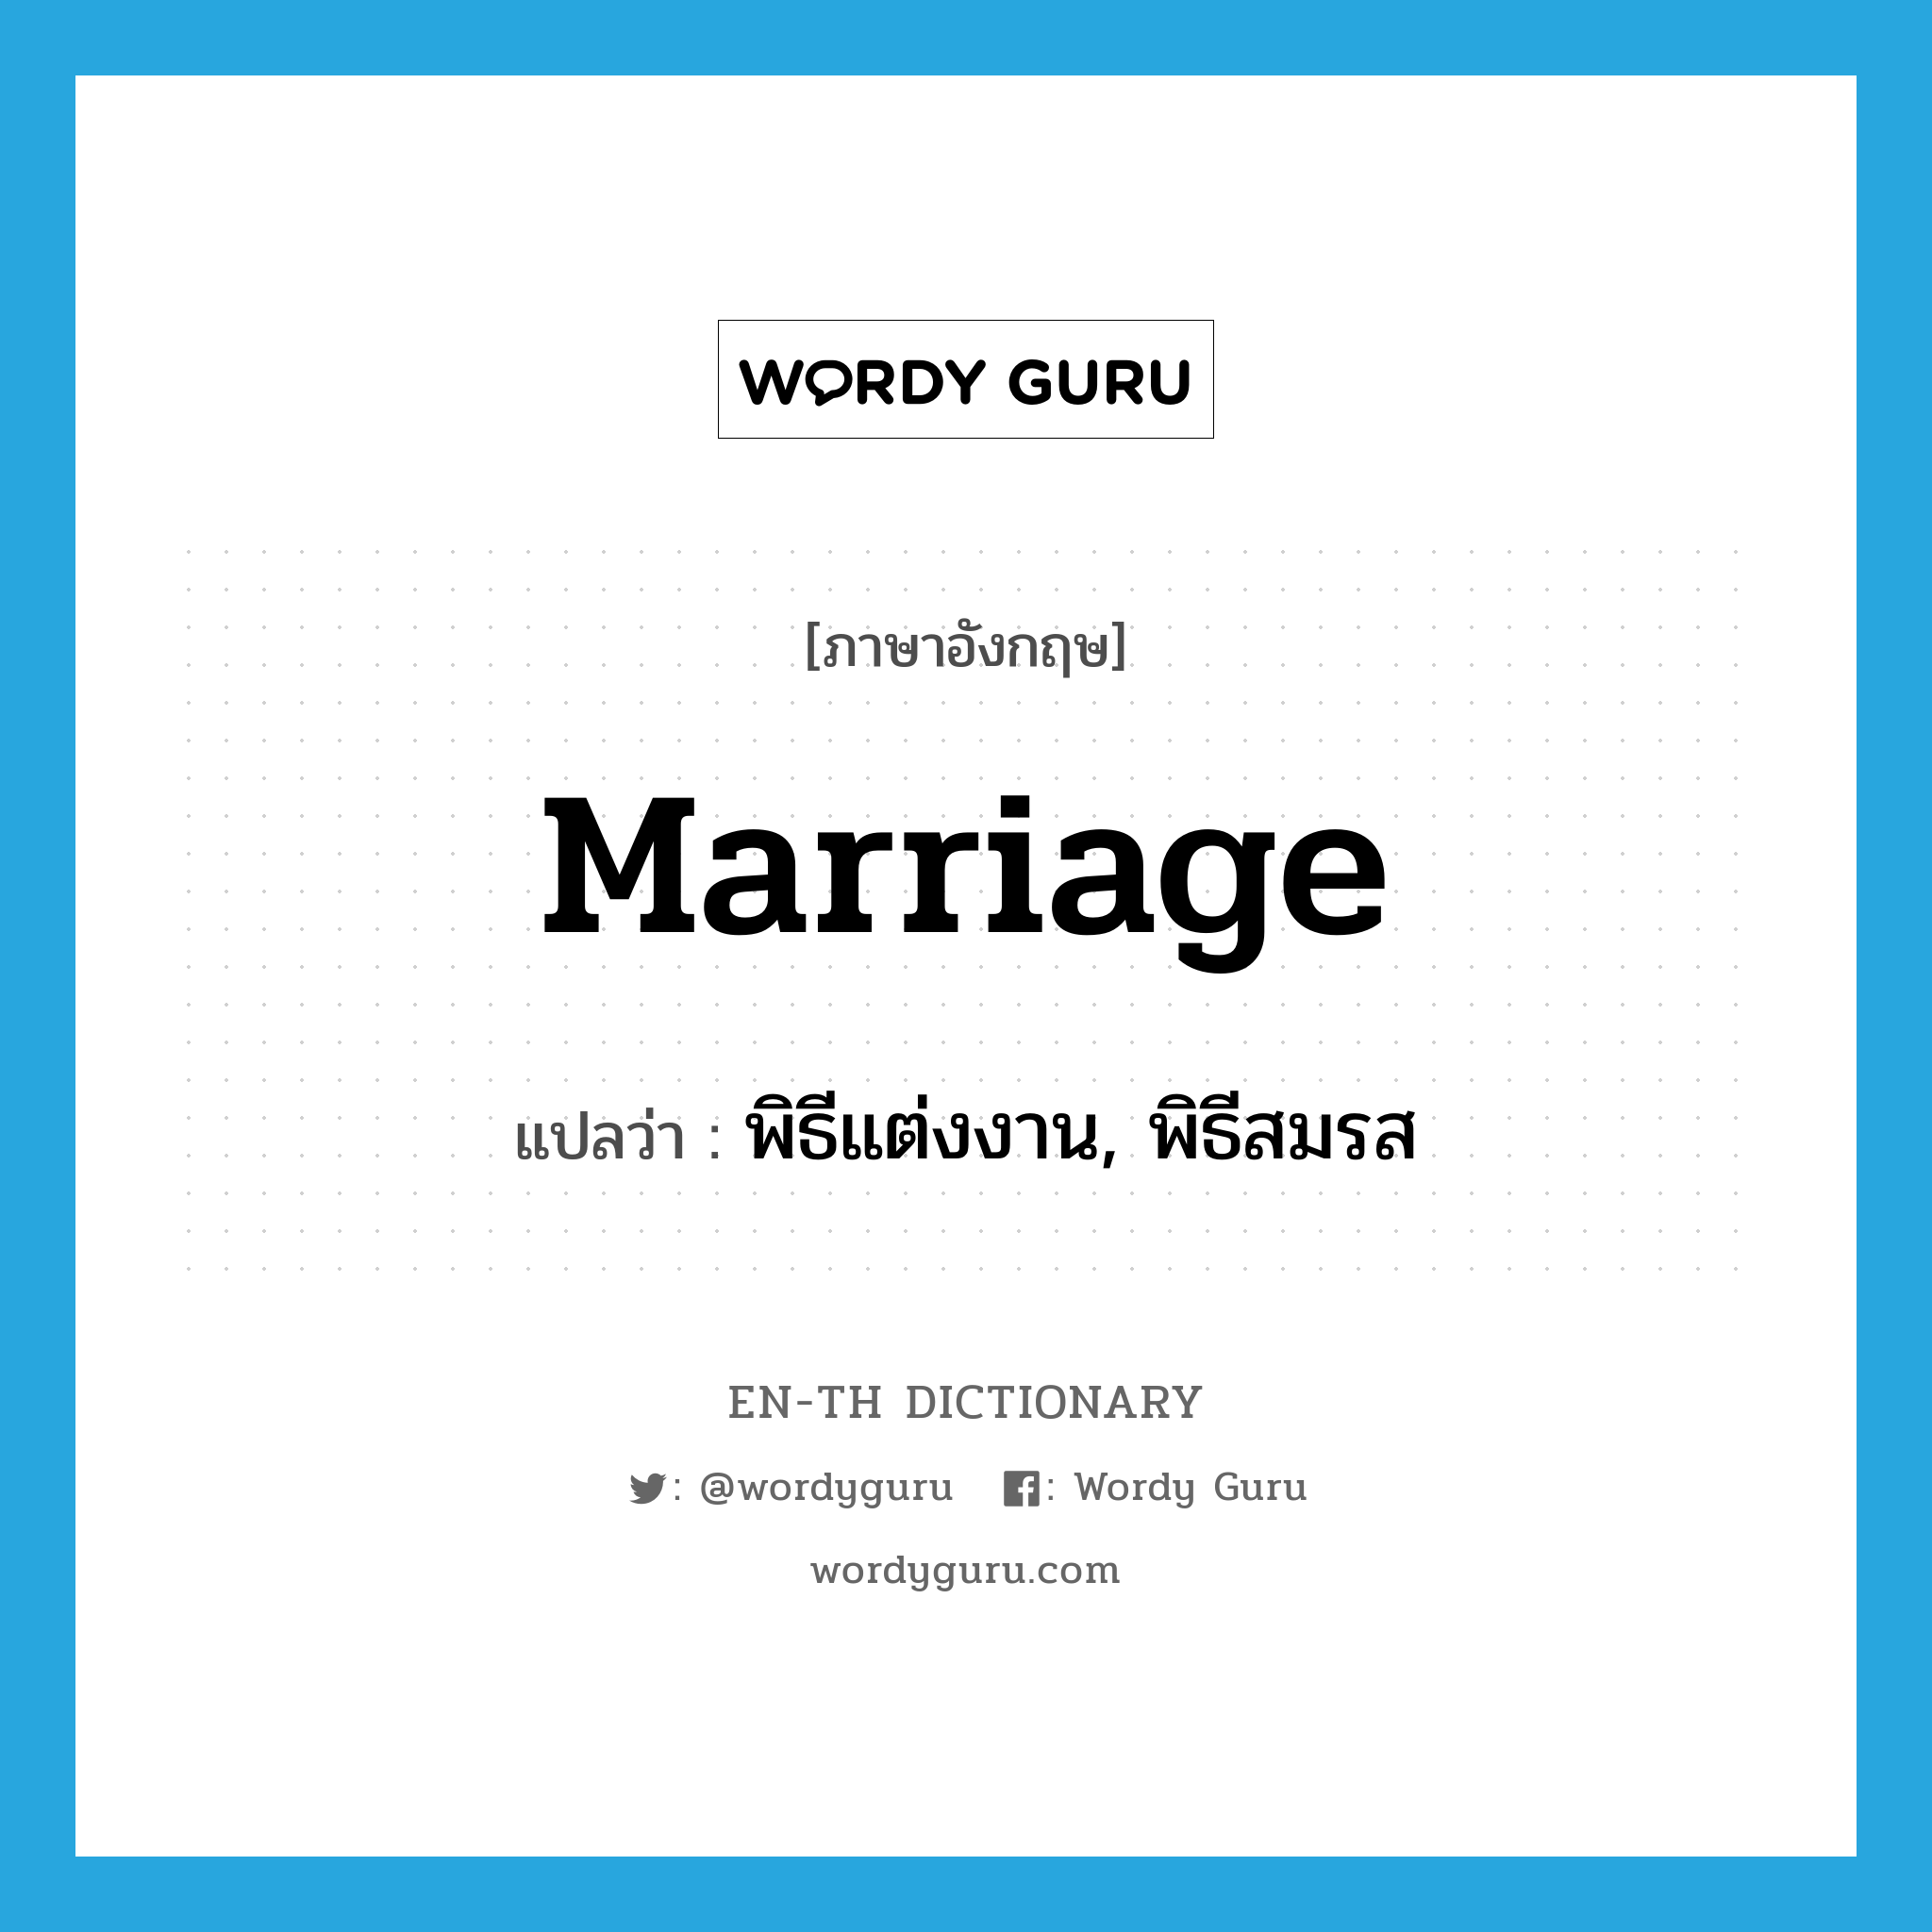 พิธีแต่งงาน, พิธีสมรส ภาษาอังกฤษ?, คำศัพท์ภาษาอังกฤษ พิธีแต่งงาน, พิธีสมรส แปลว่า marriage ประเภท N หมวด N